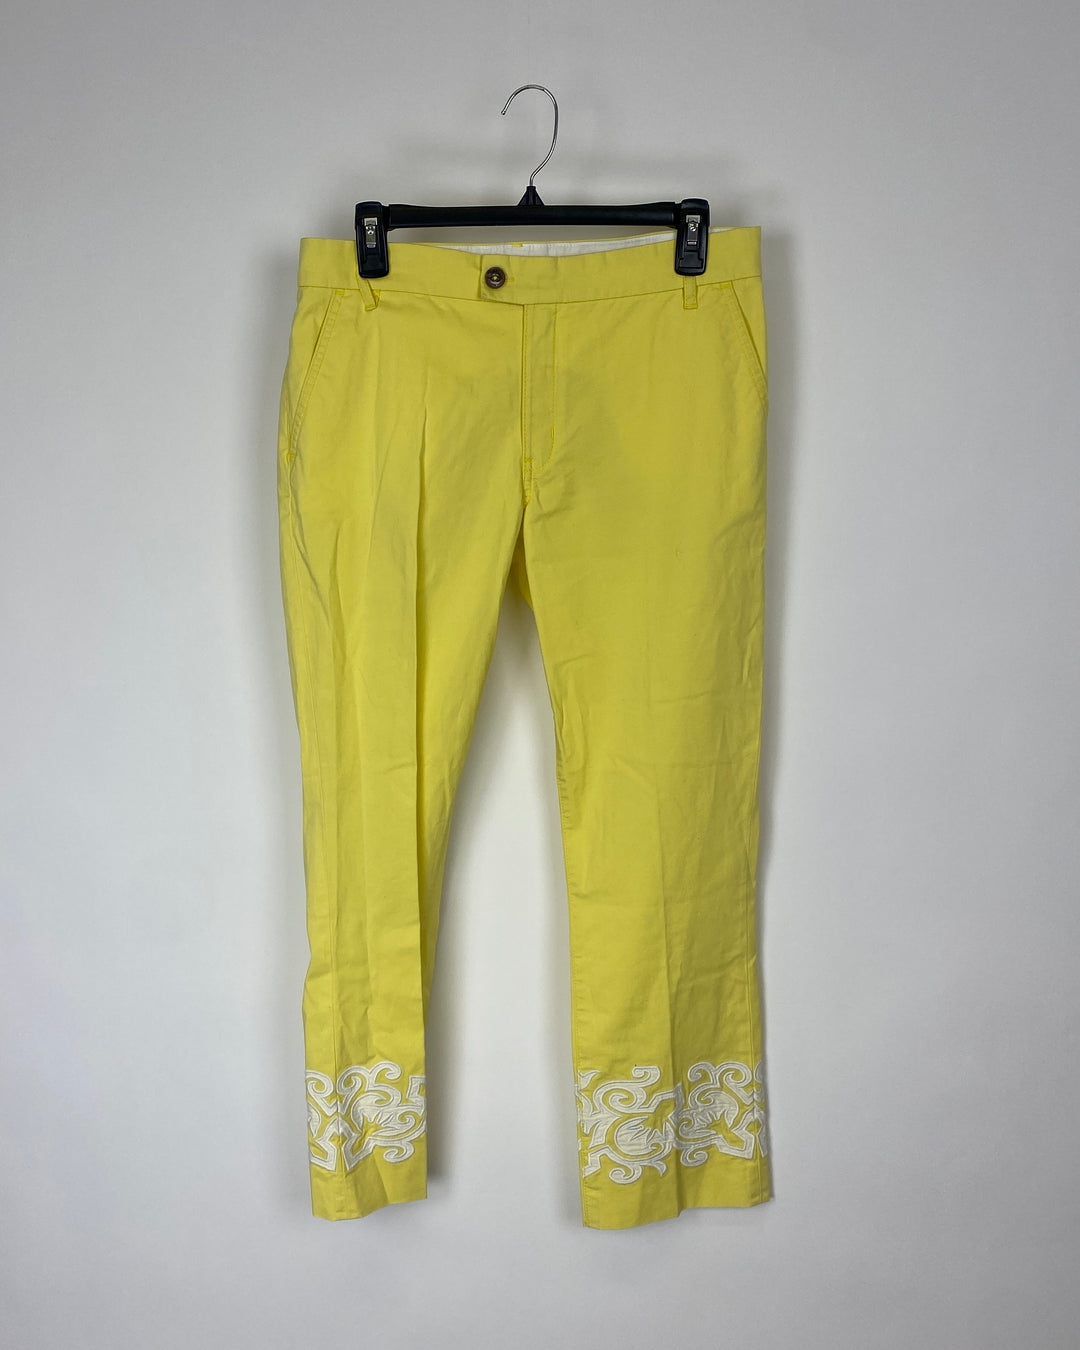 Yellow Pants - Size 27